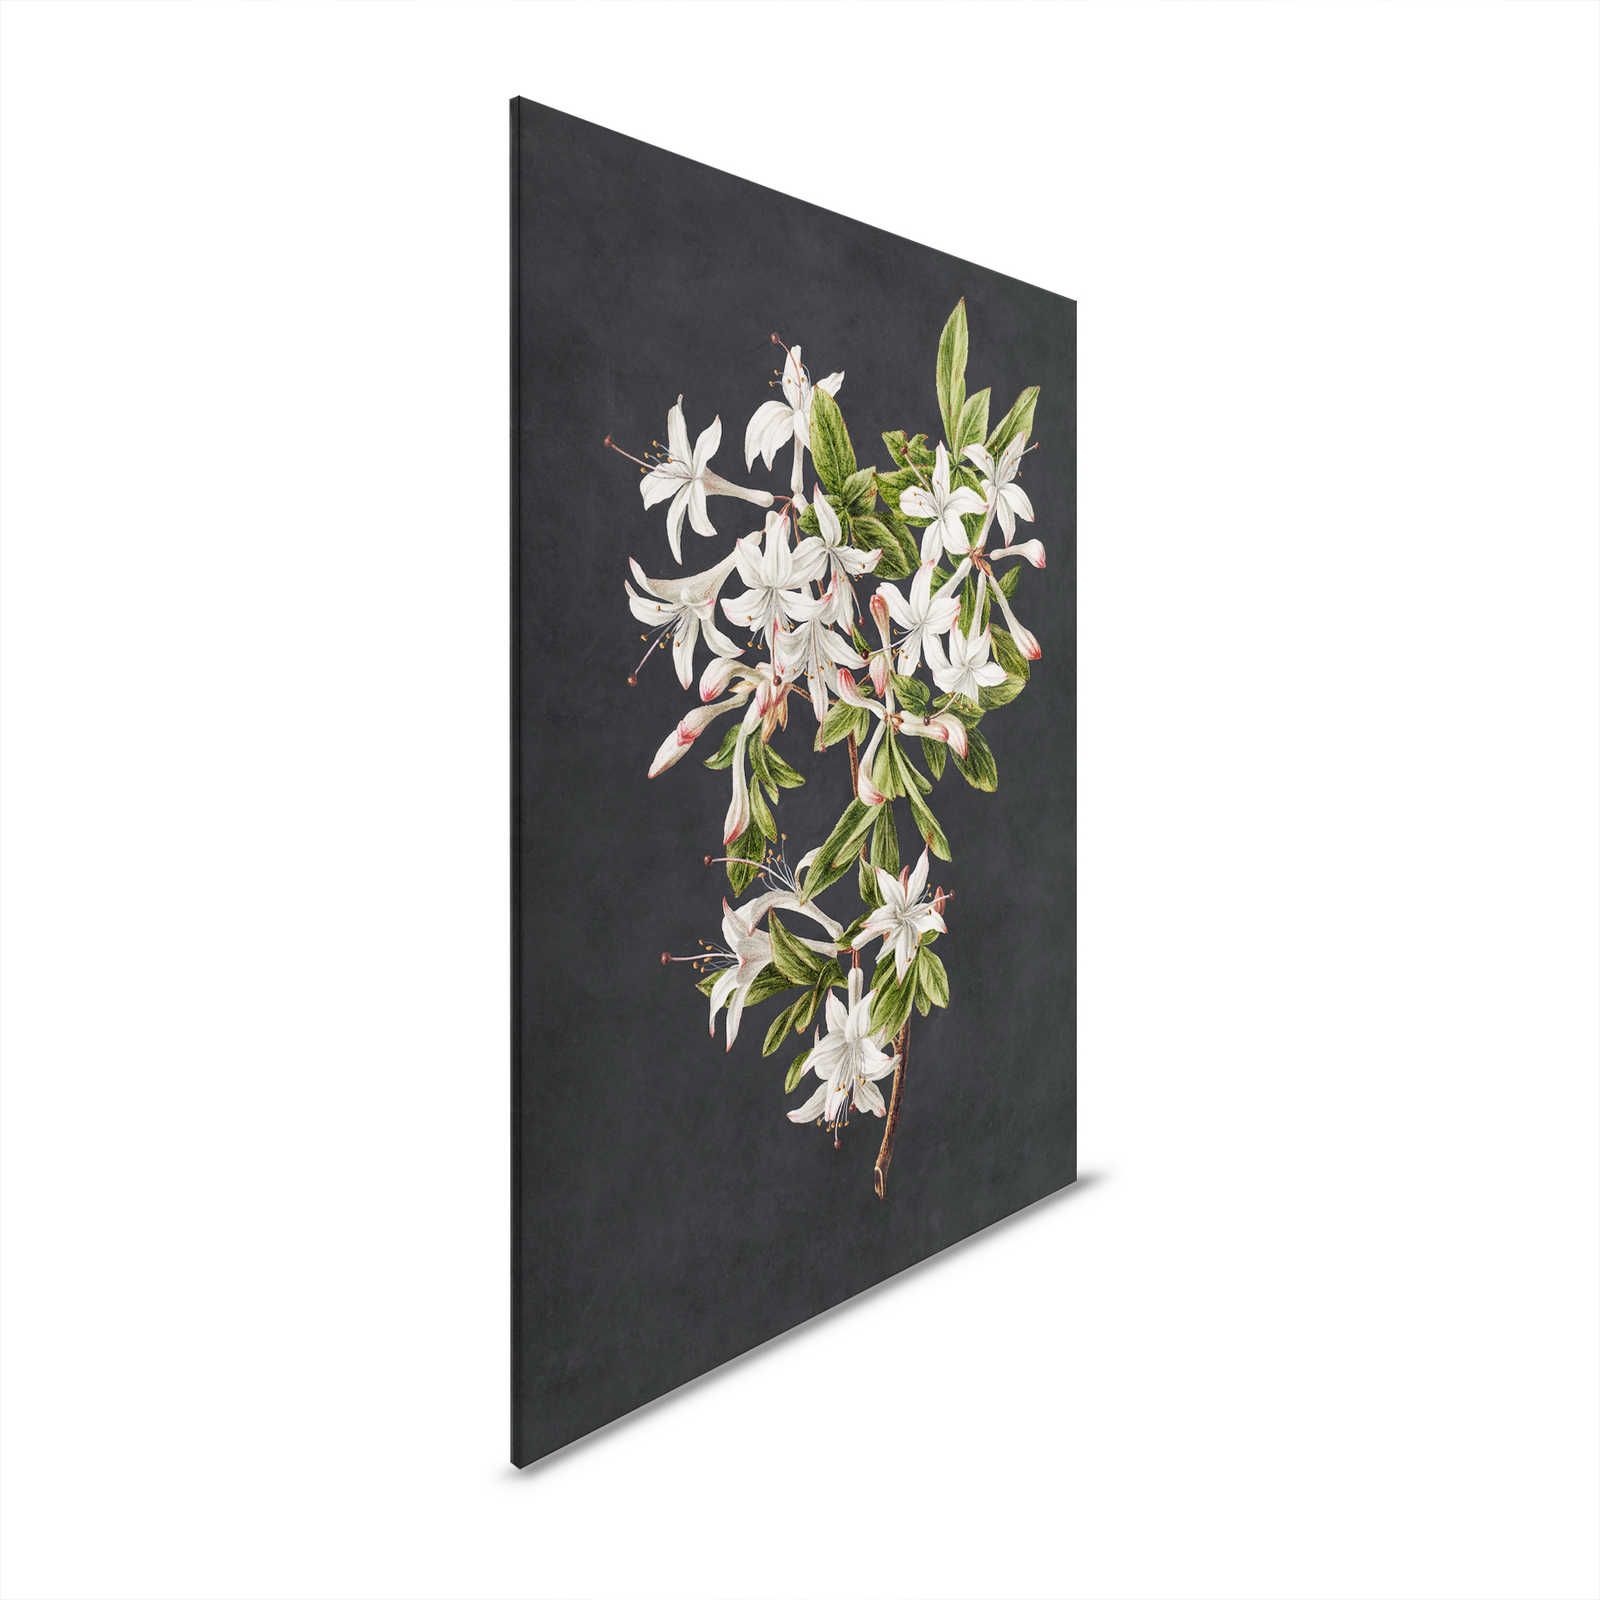 Midnight Garden 2 - Toile noire branche fleurie fleurs blanches - 0,60 m x 0,90 m
